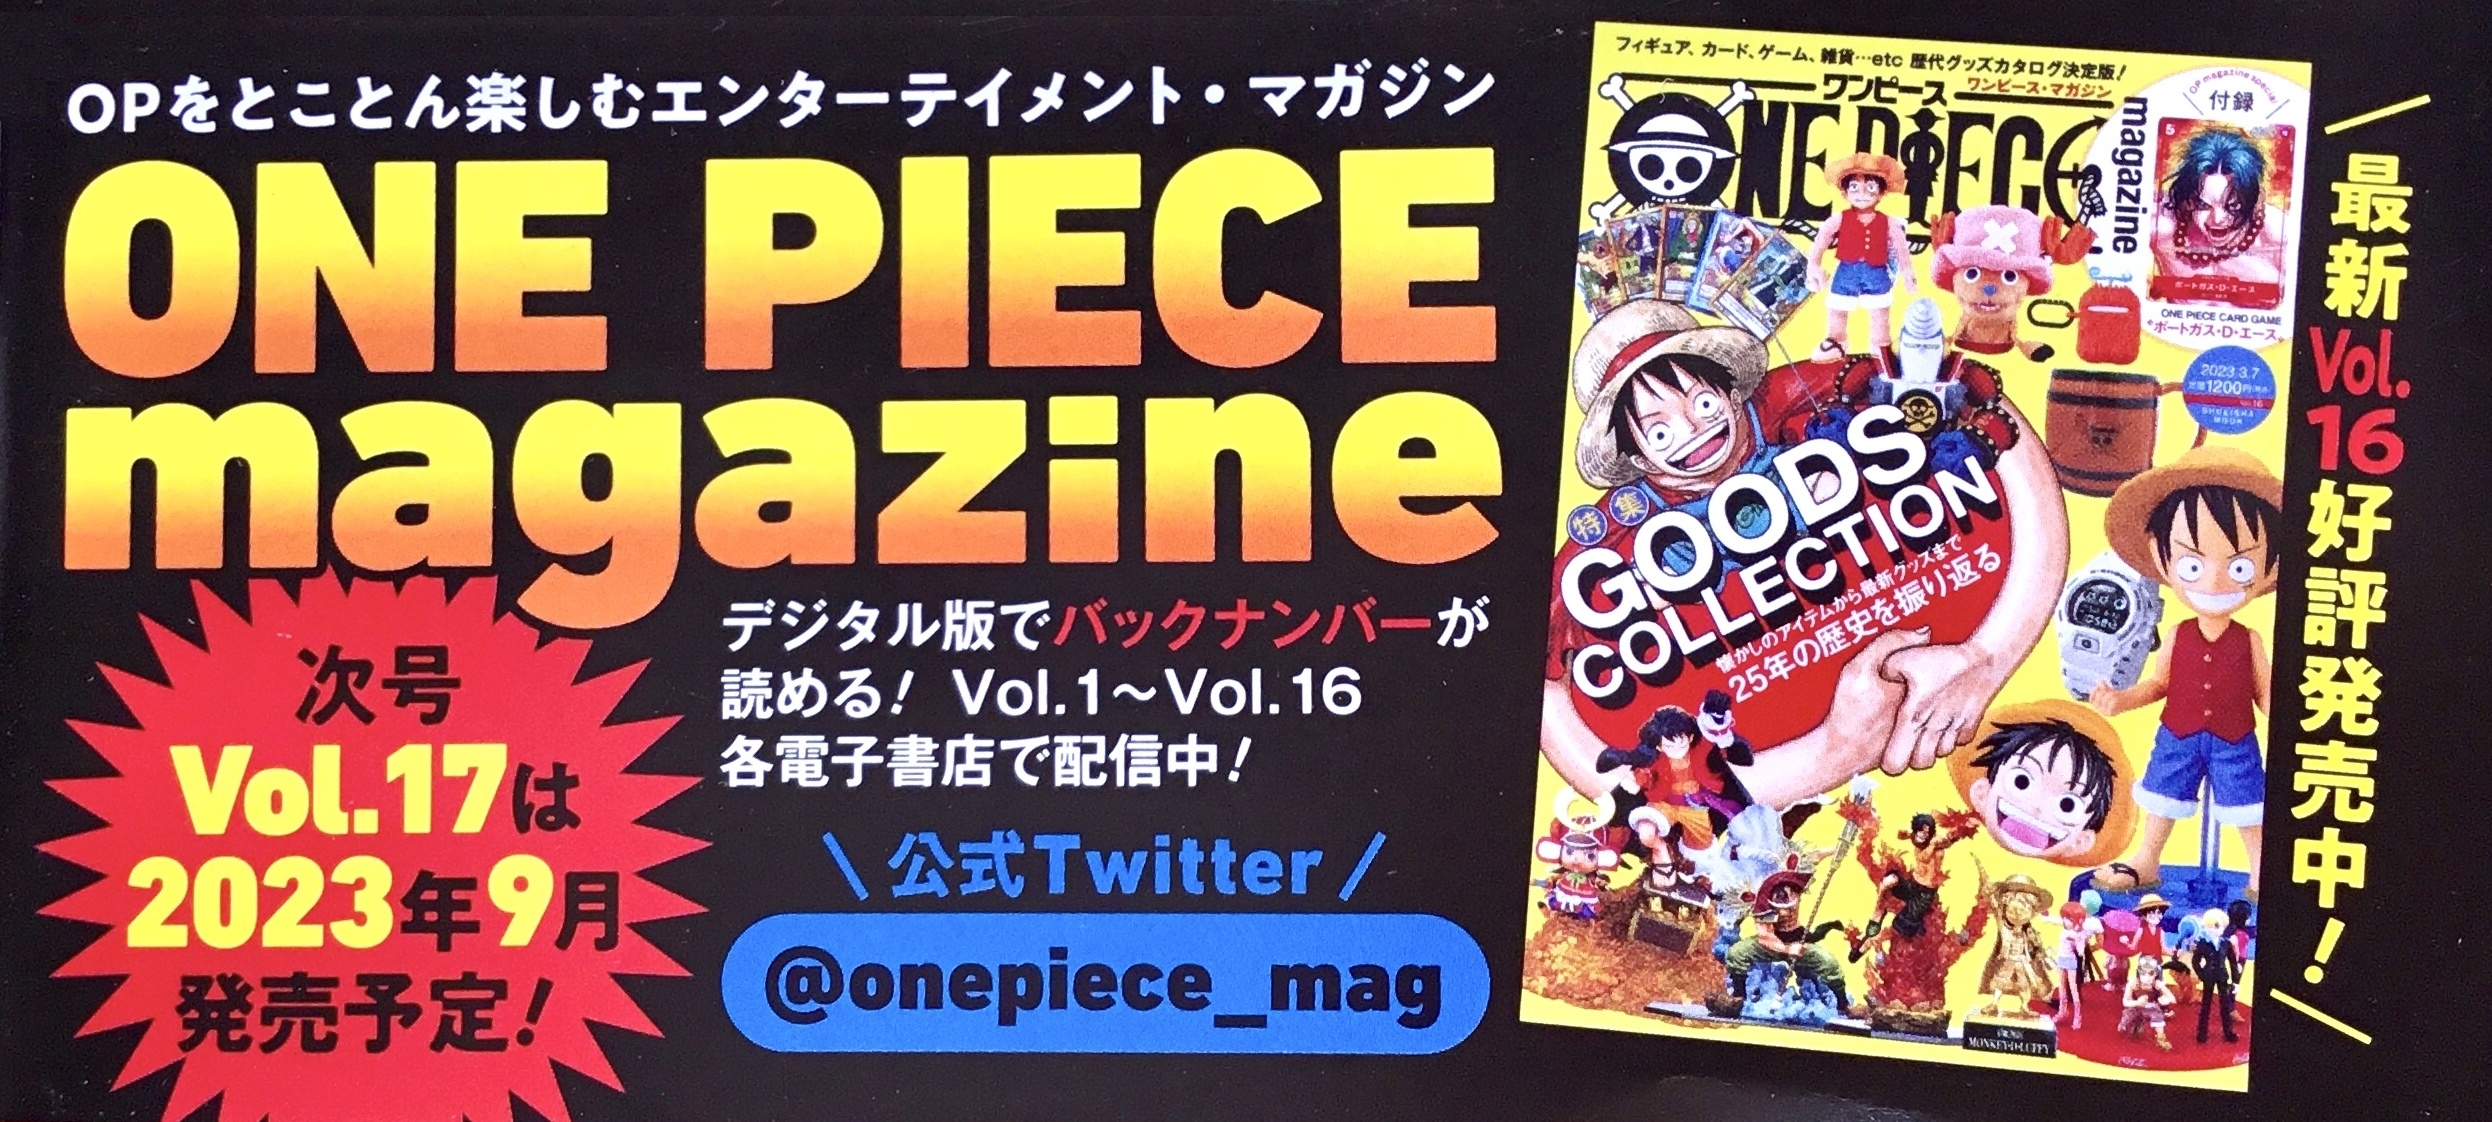 One Piece Magazine 16